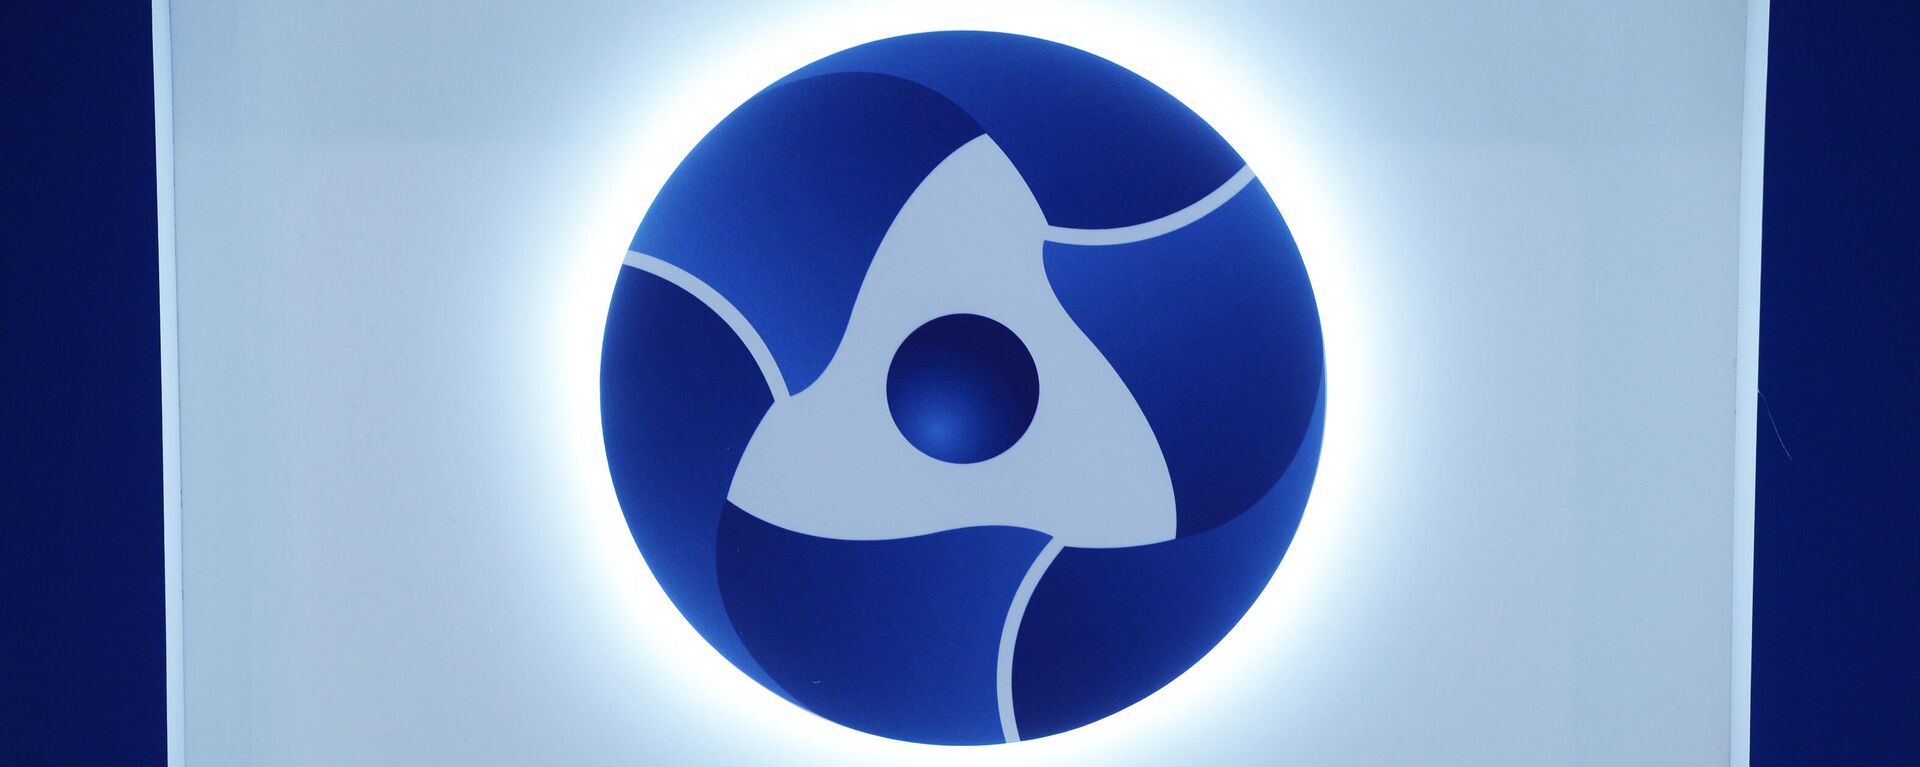 Логотип государственной корпорации по атомной энергии Росатом, архивное фото - Sputnik Литва, 1920, 14.07.2021